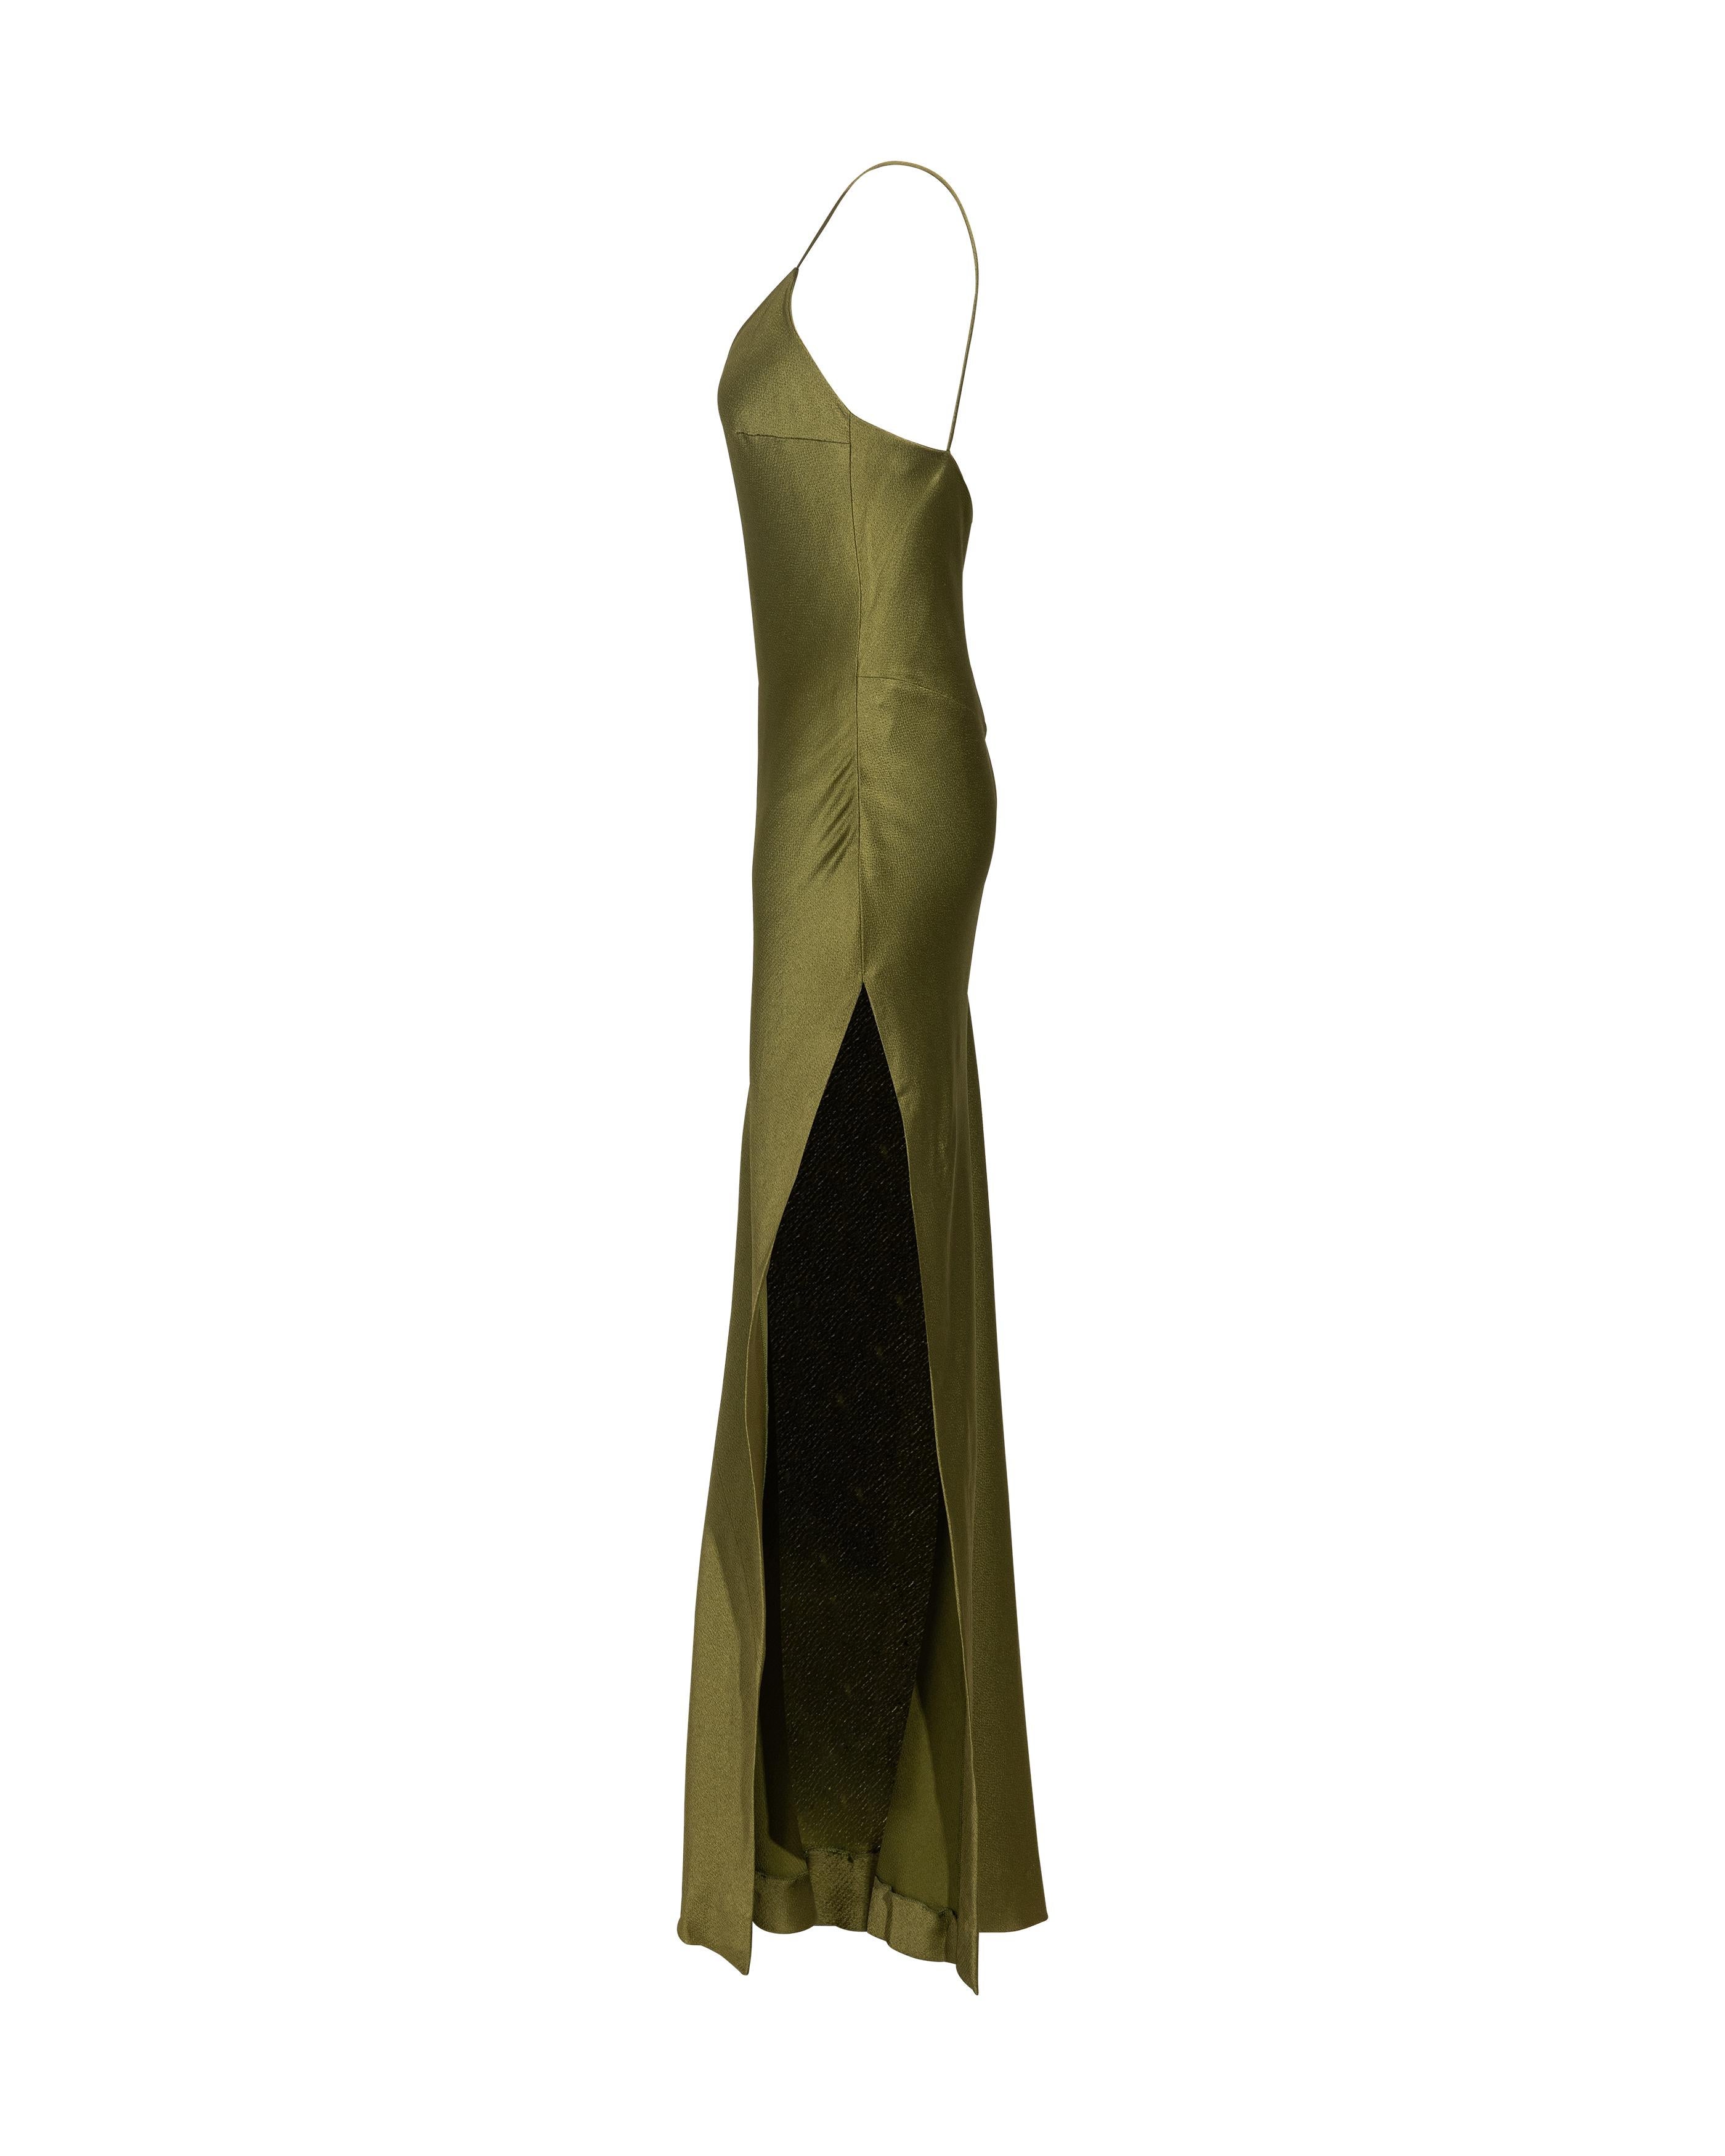  Robe-culotte Christian Dior by John Galliano vert olive coupée en biais, P/E 1999 Pour femmes 